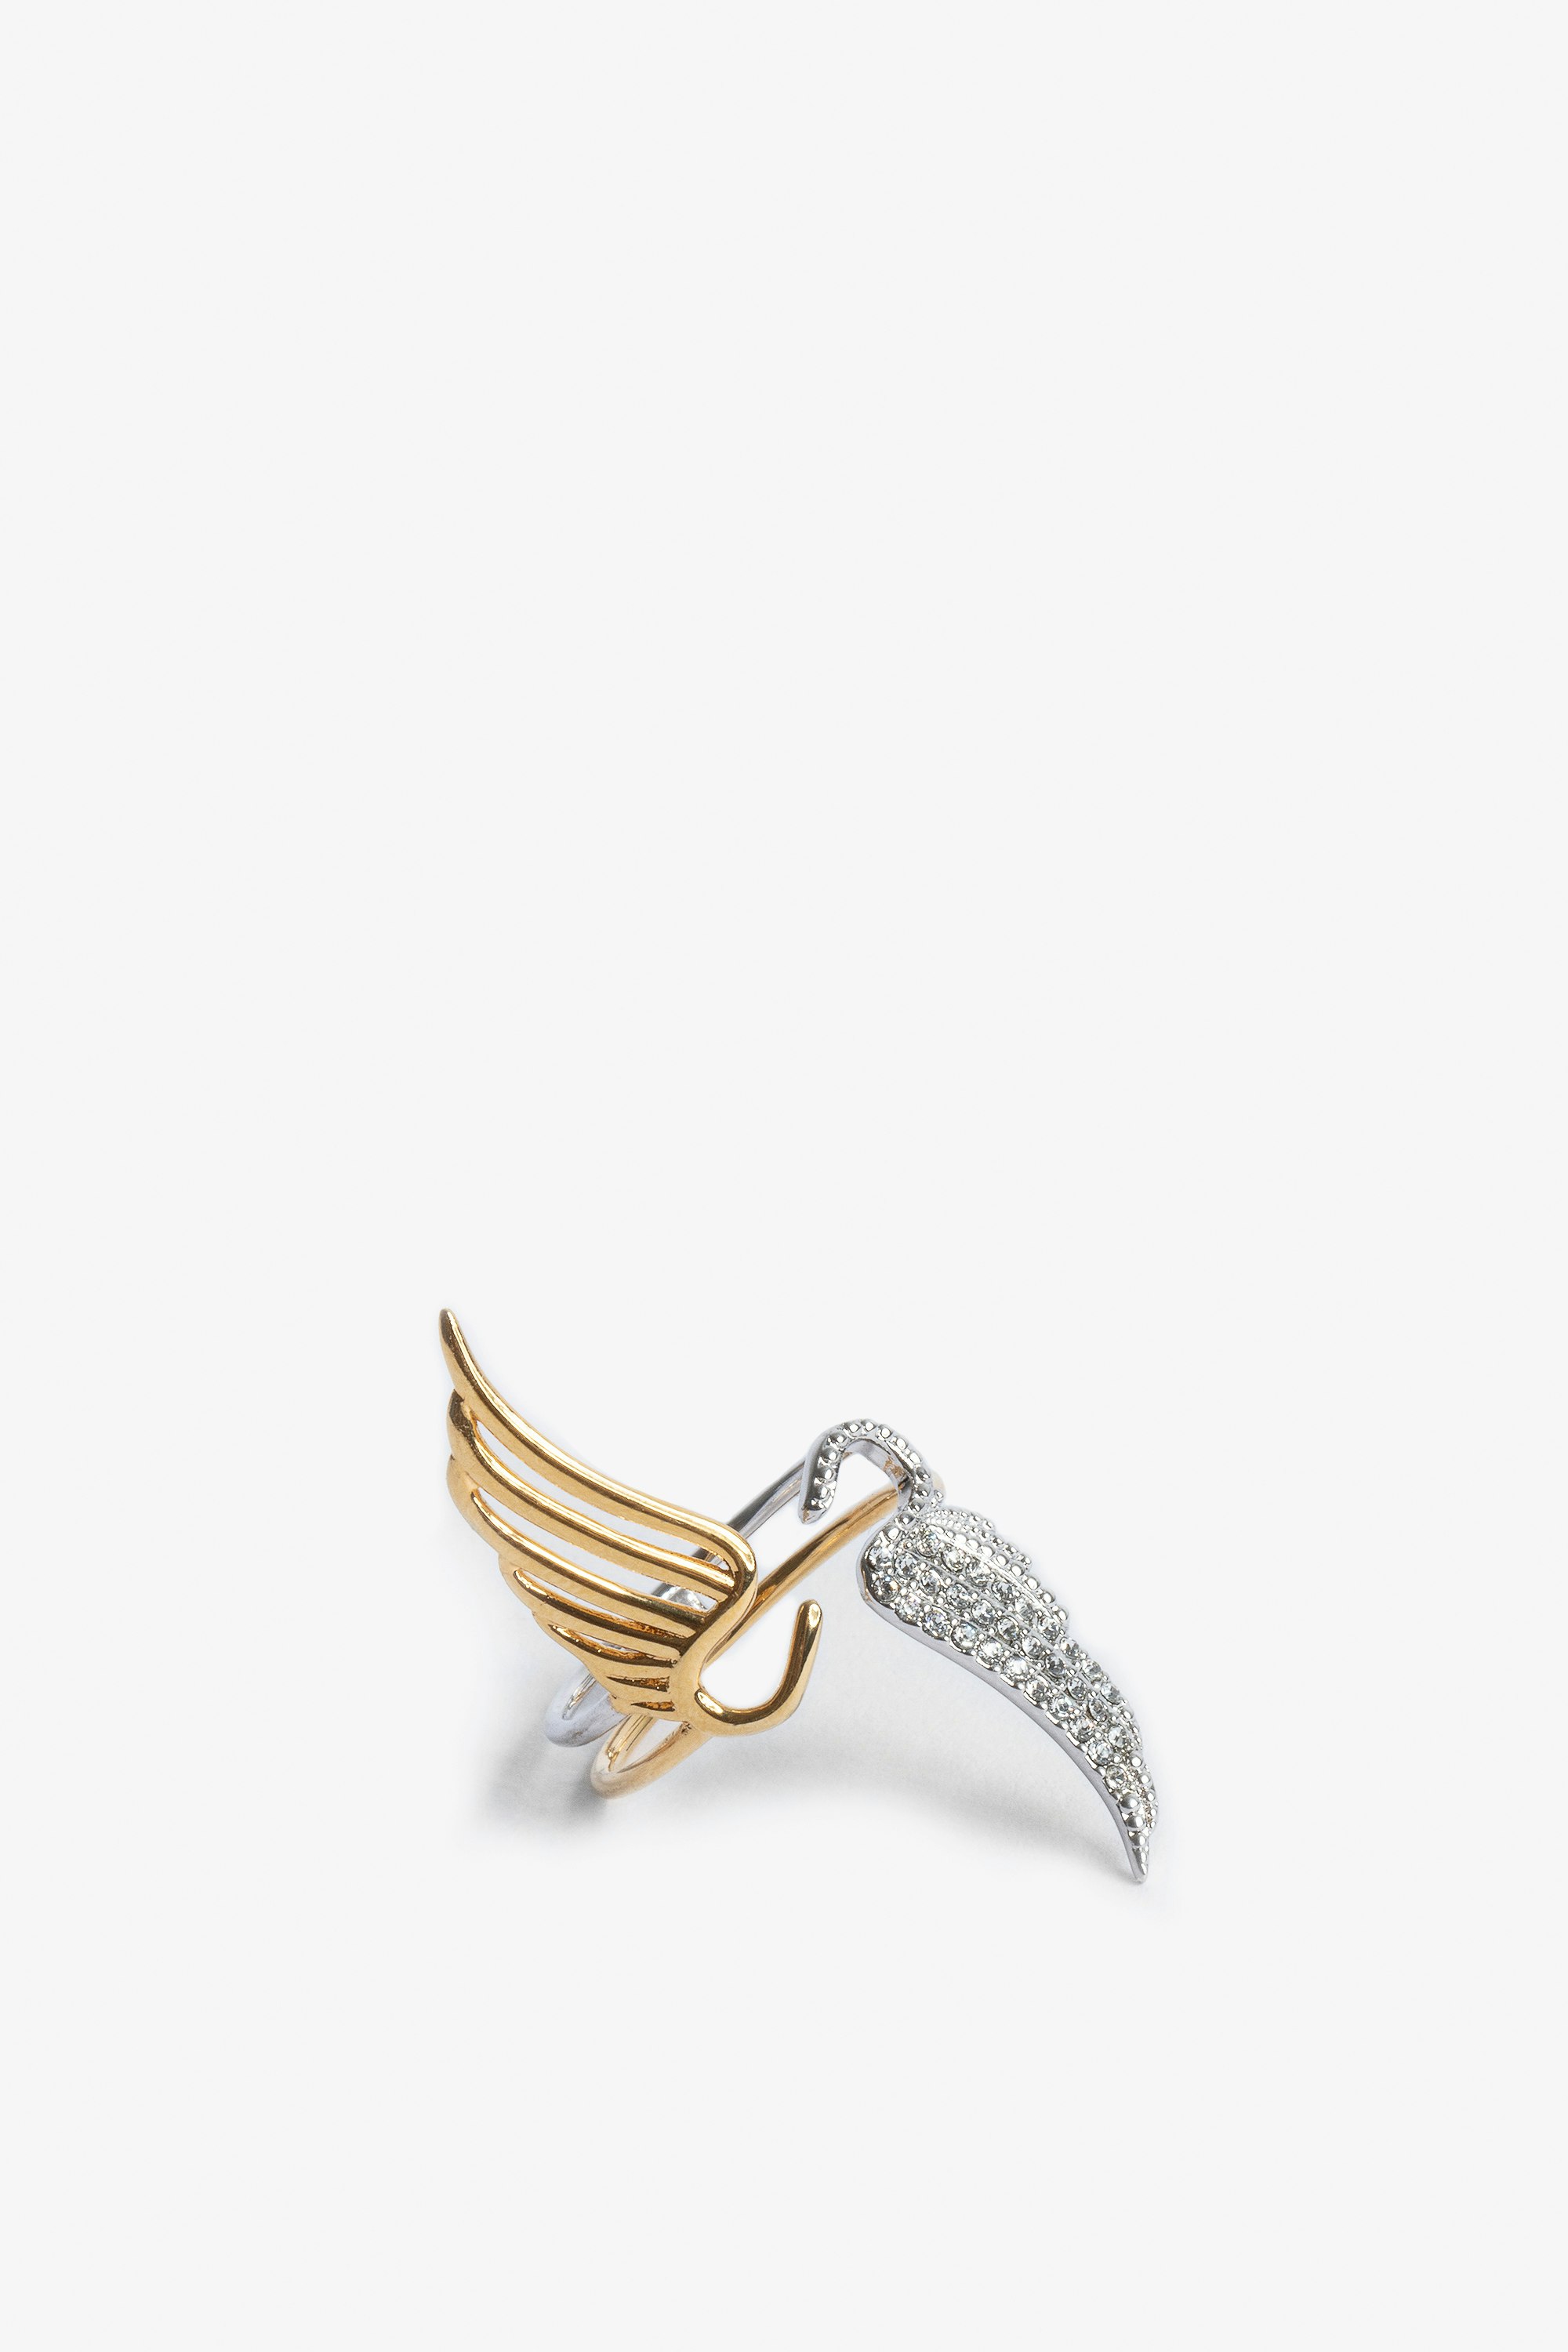 Rock Over 指輪 片面がゴールドプレートのブラスの翼、もう片面がクリスタルのトワ エ モワリング